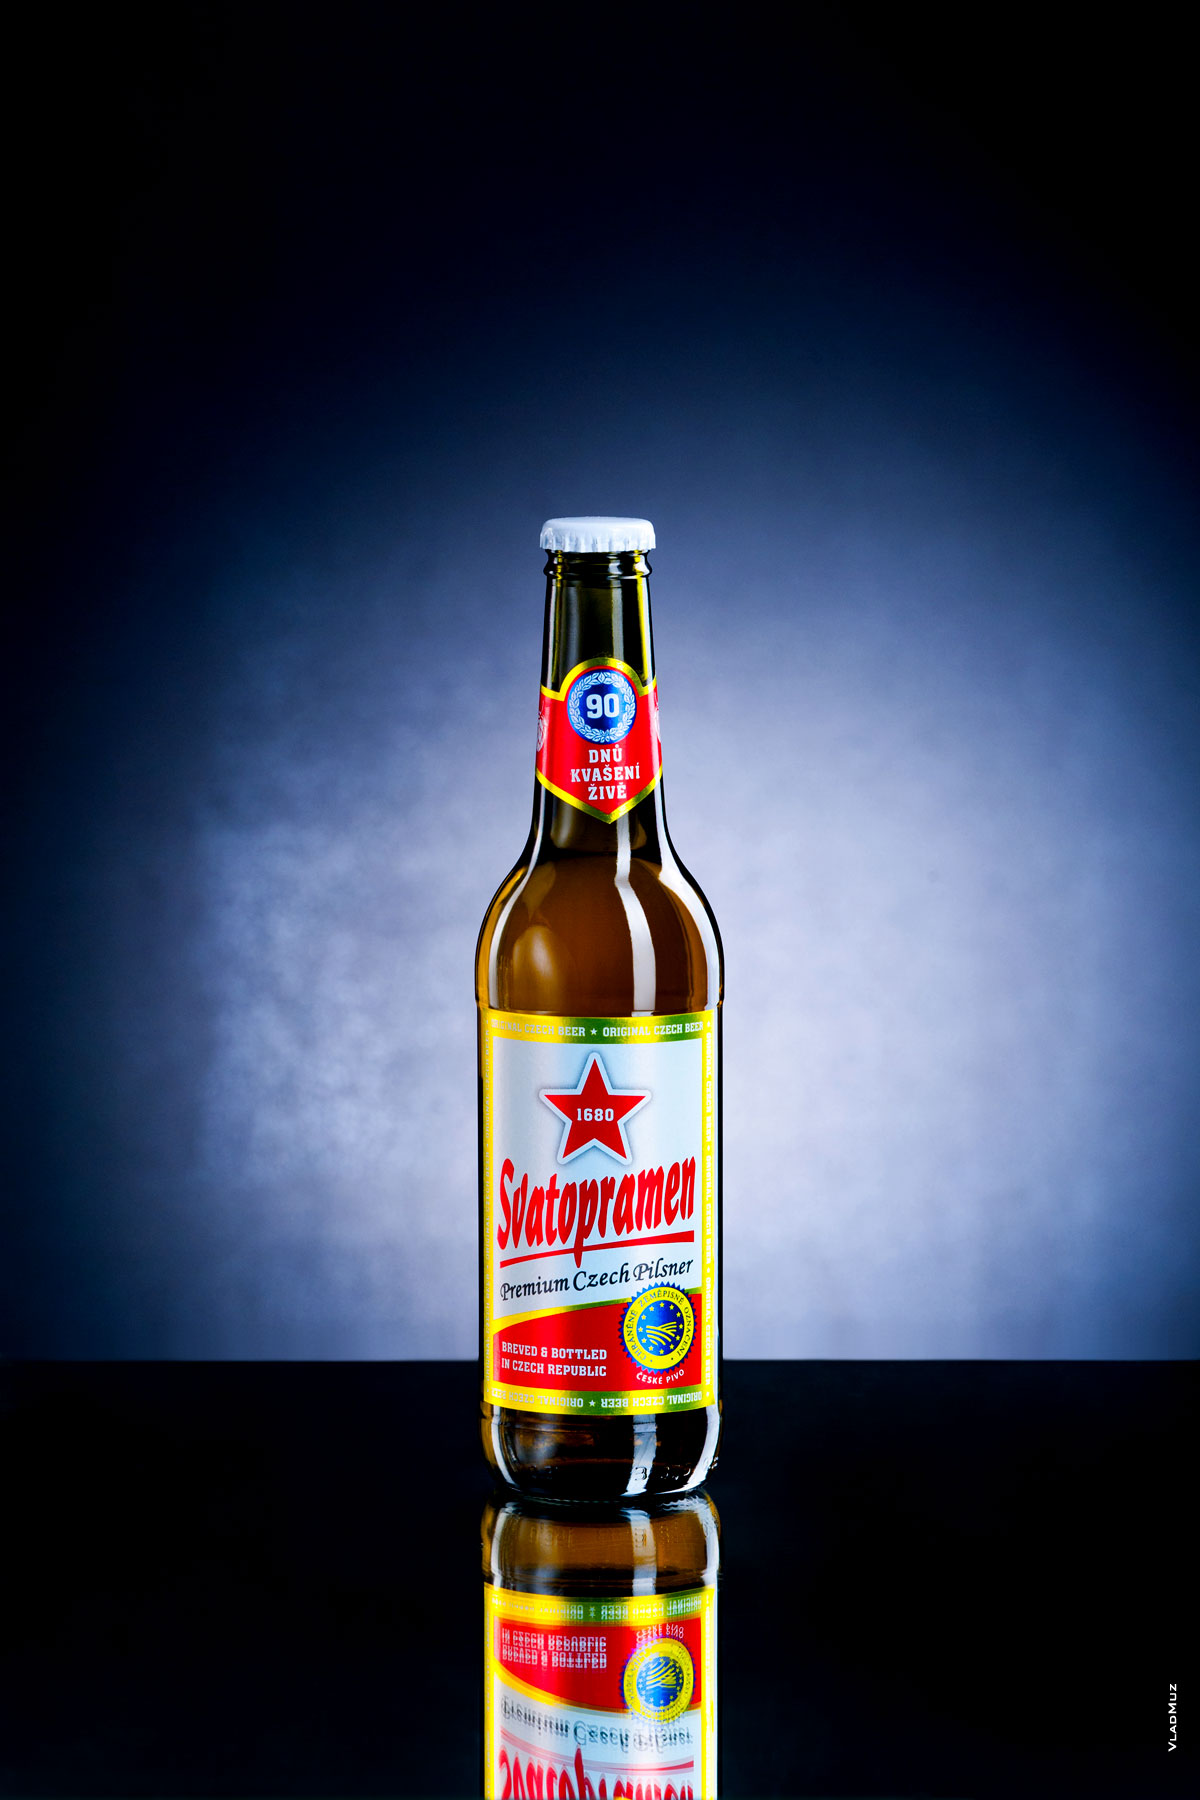 Фото бутылки светлого пива «Святопрамен» на темно-синем фоне